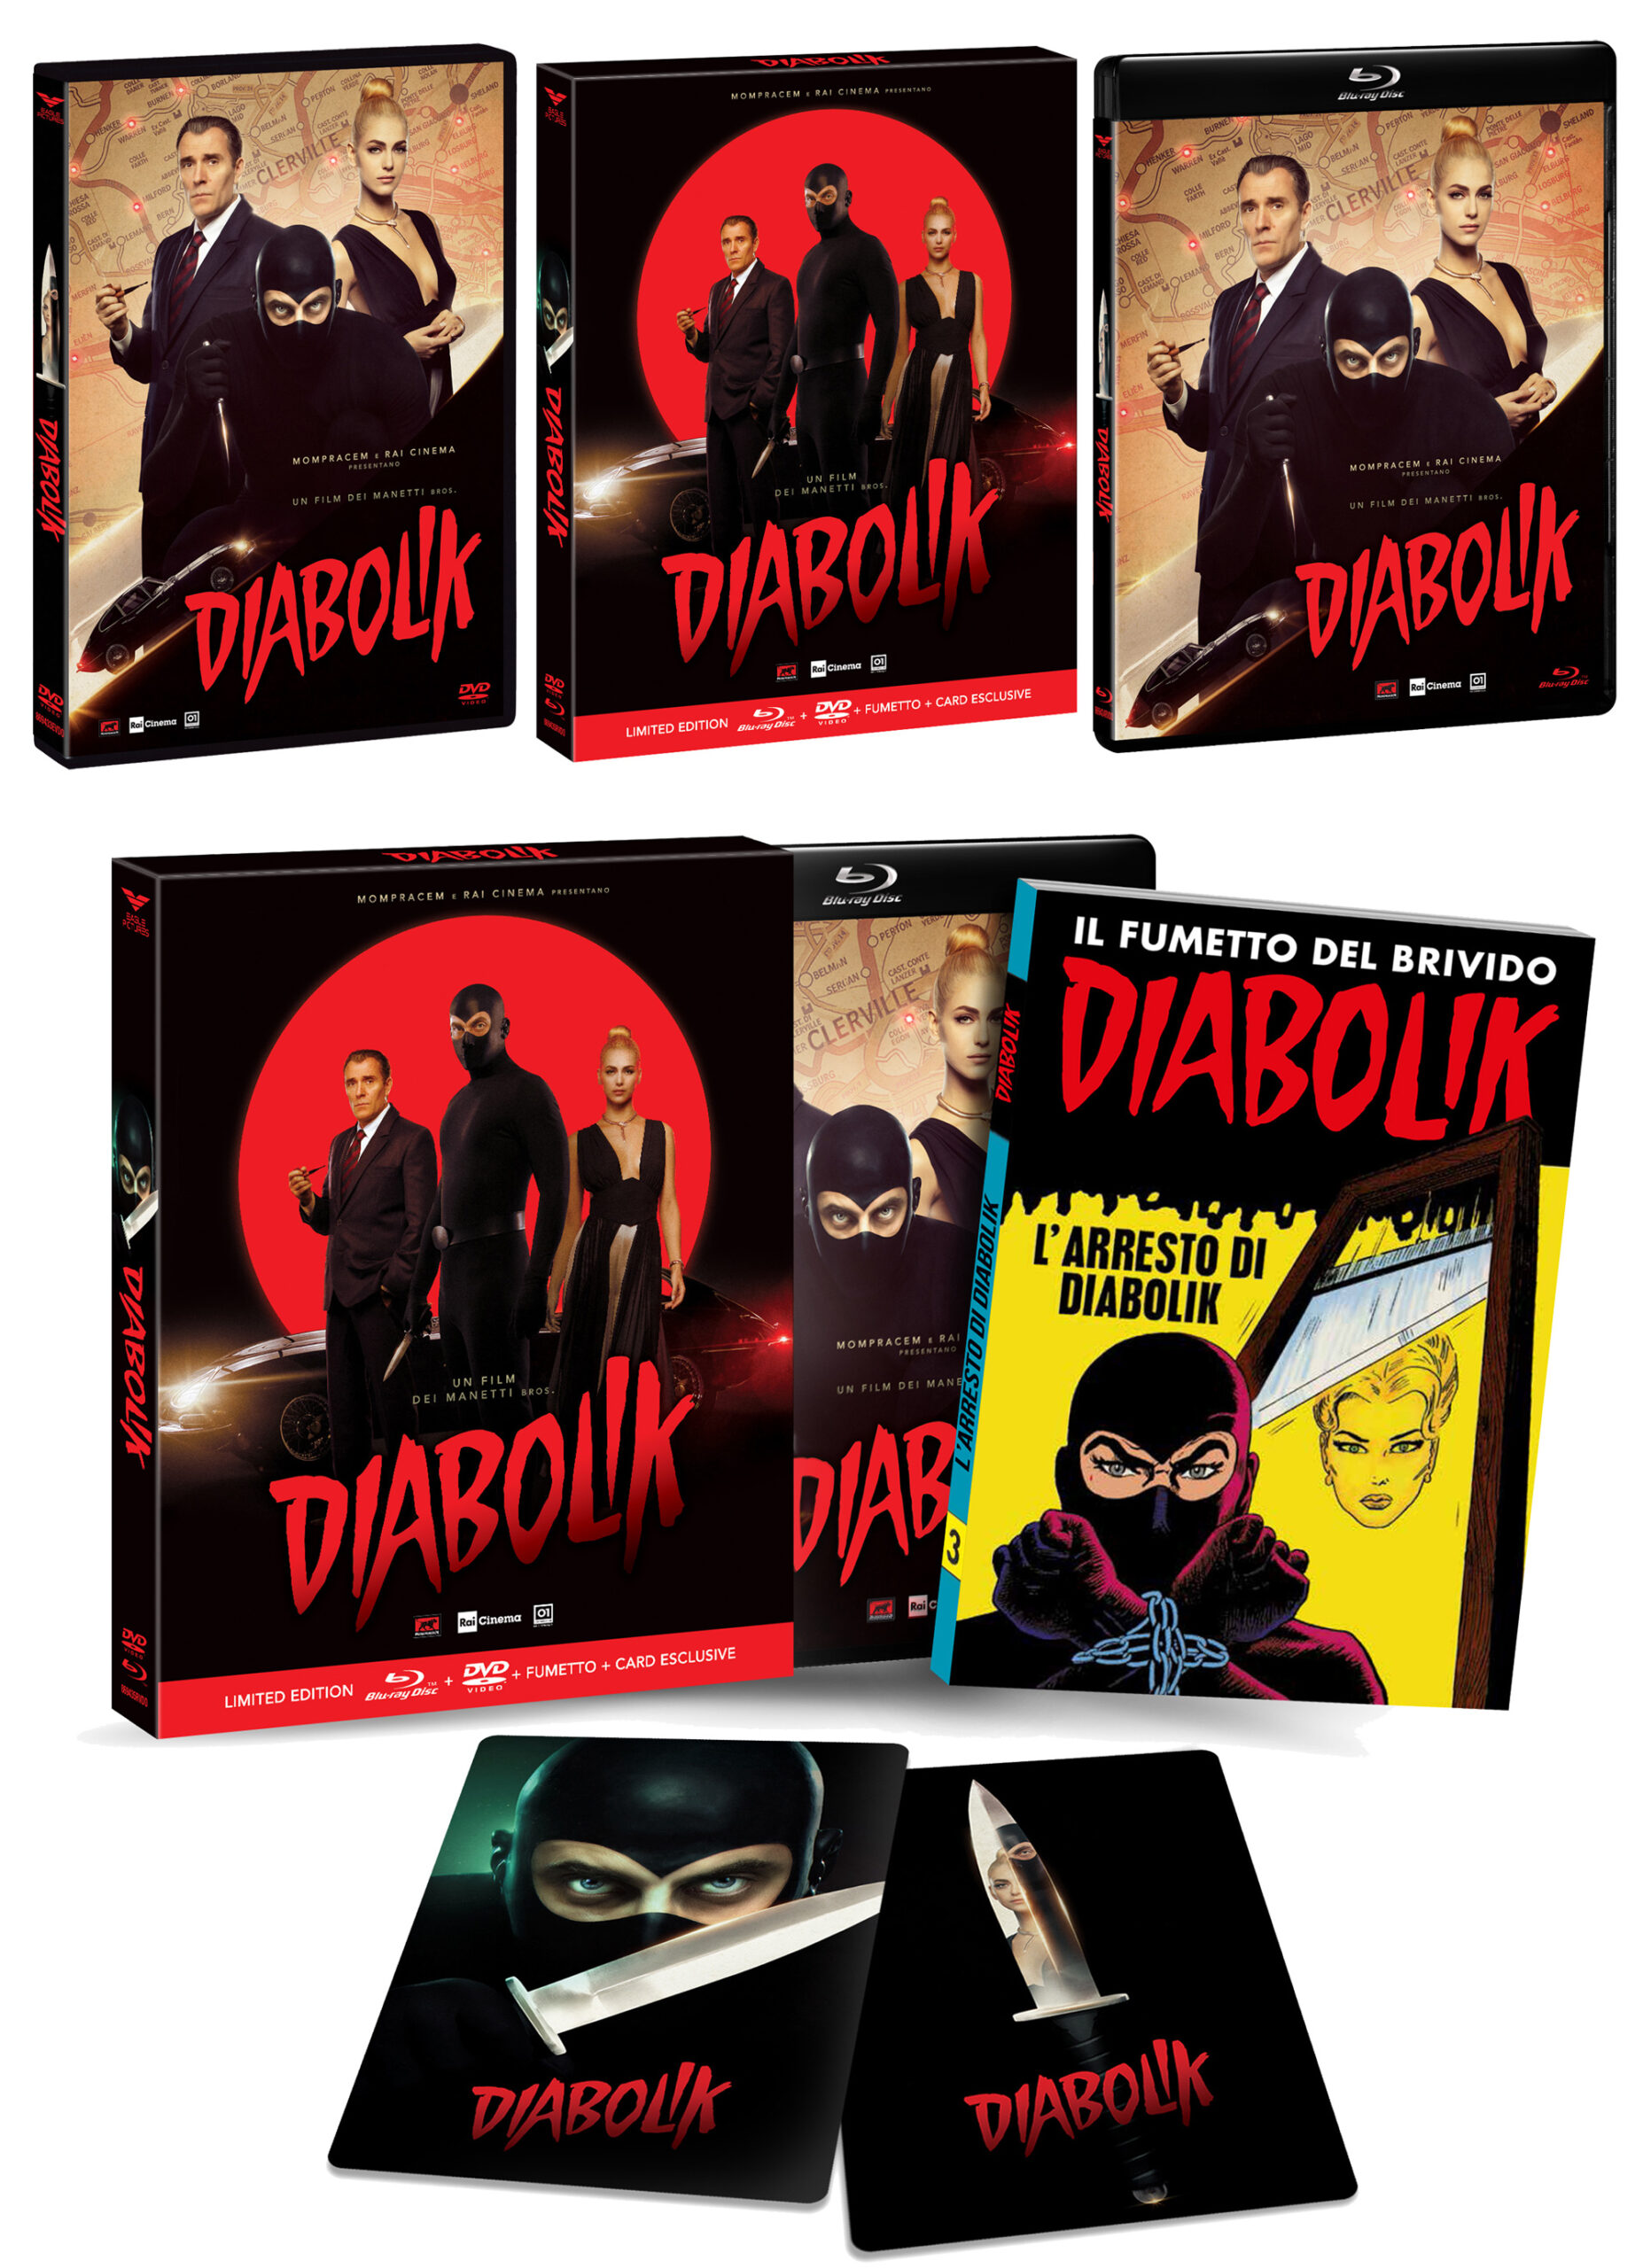 DIABOLIK nei formati DVD, Blu-ray e edizione limitata con doppio disco DVD con BD